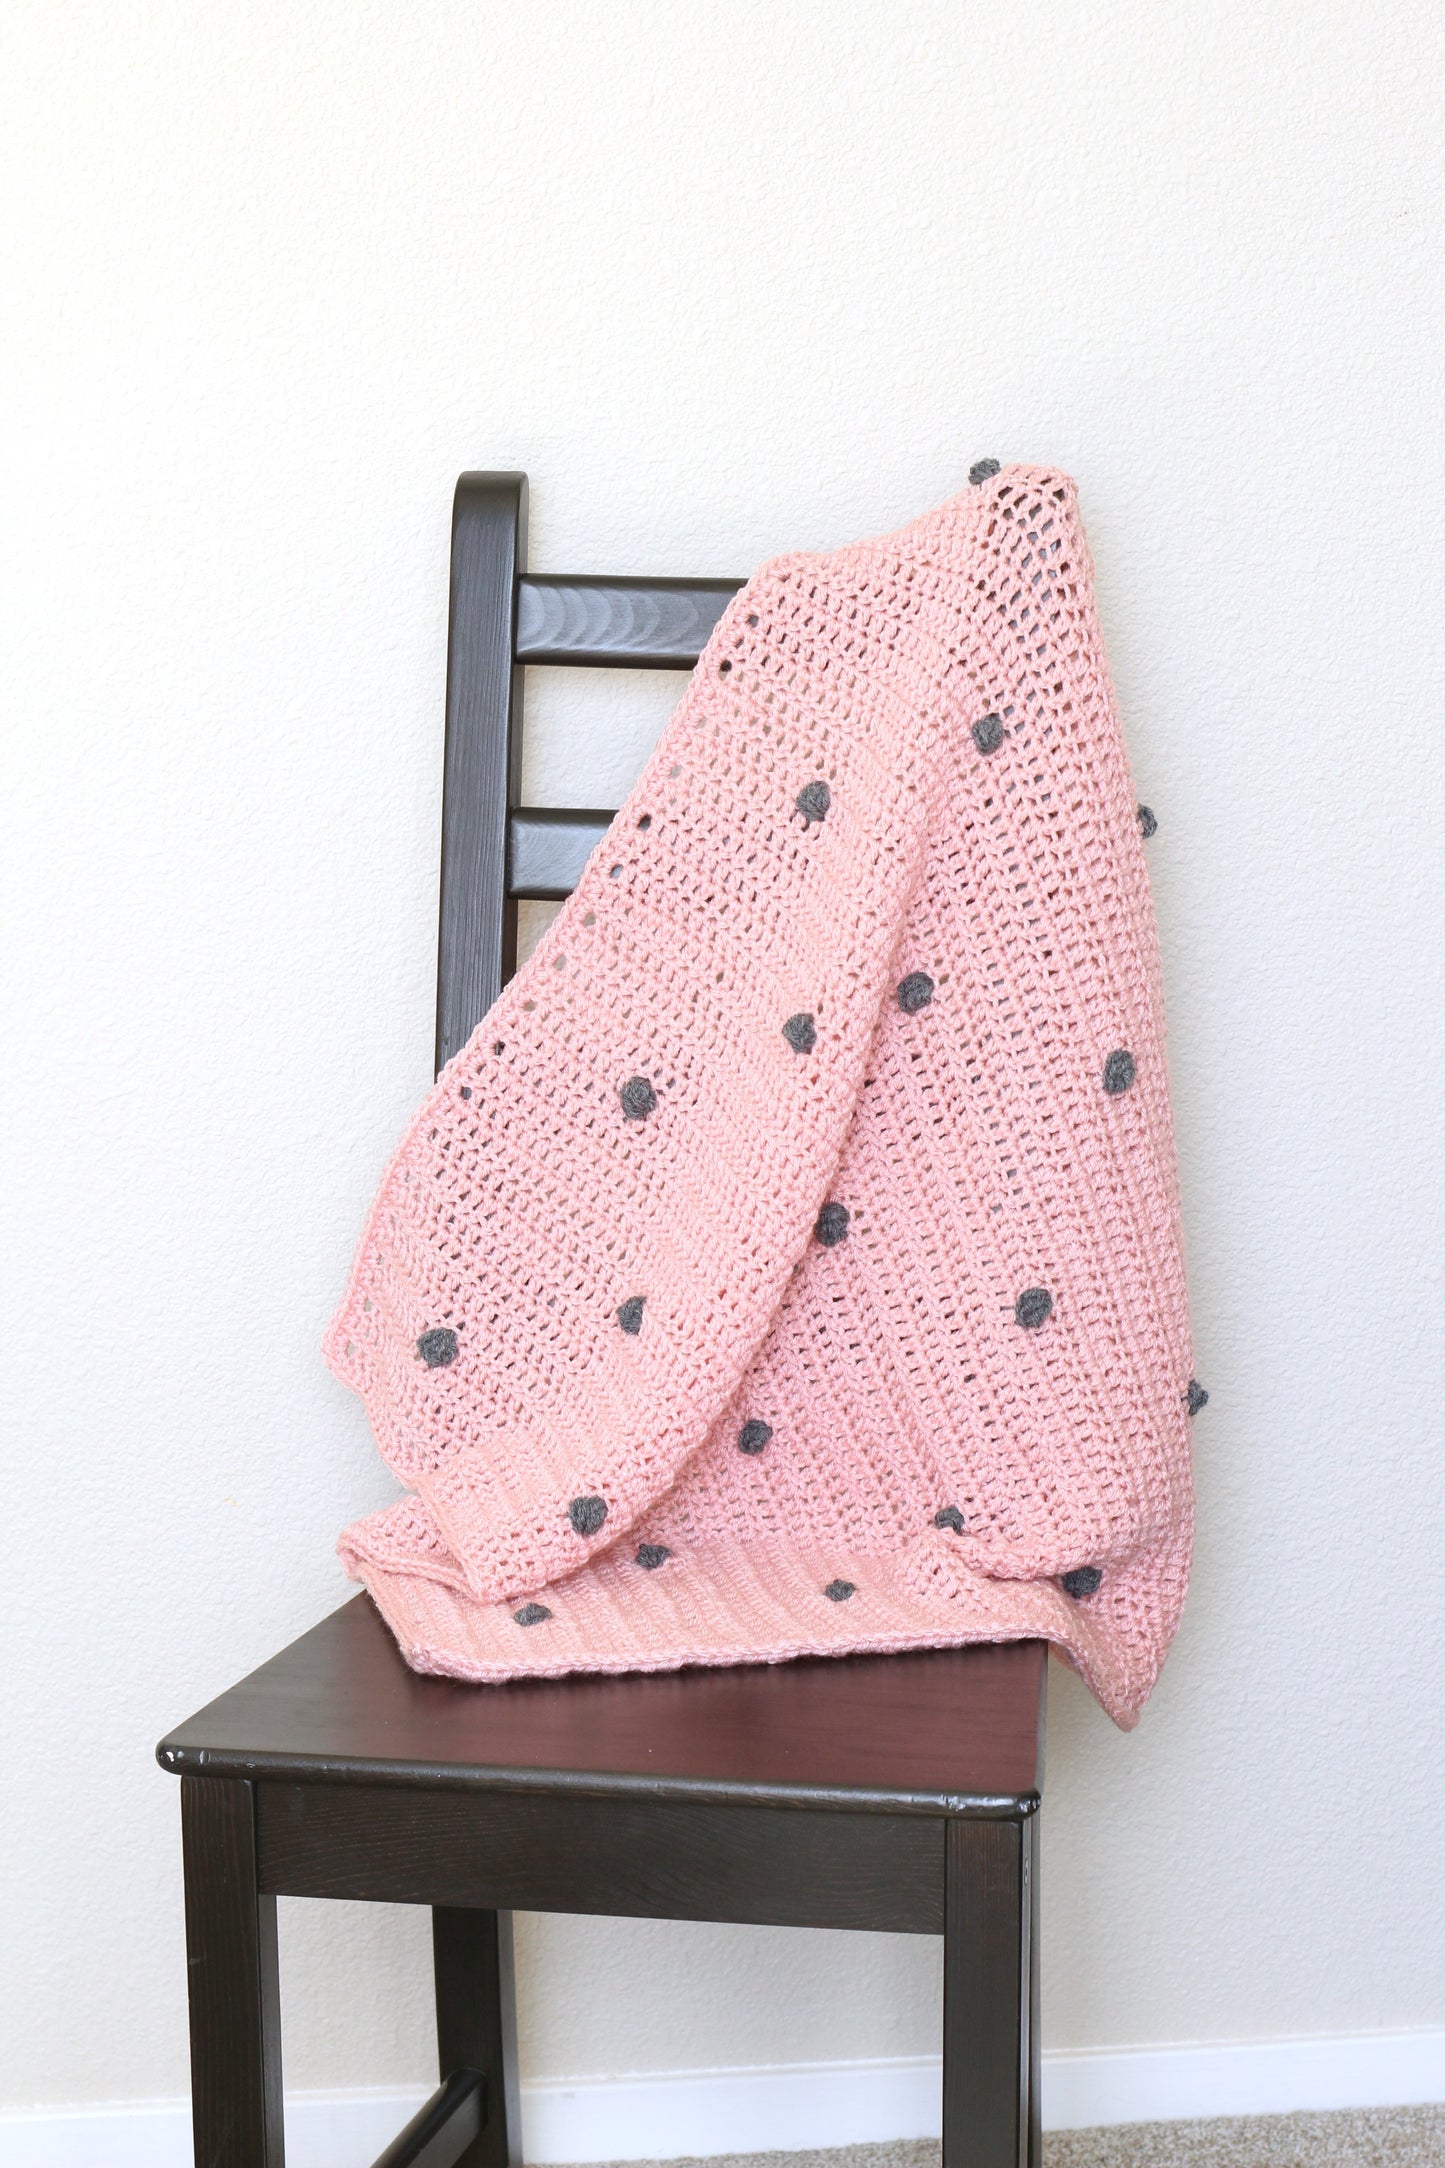 DIY Crochet kit - crochet baby blanket with bobbles, newborn blanket, baby shower gift - Augusta Blanket